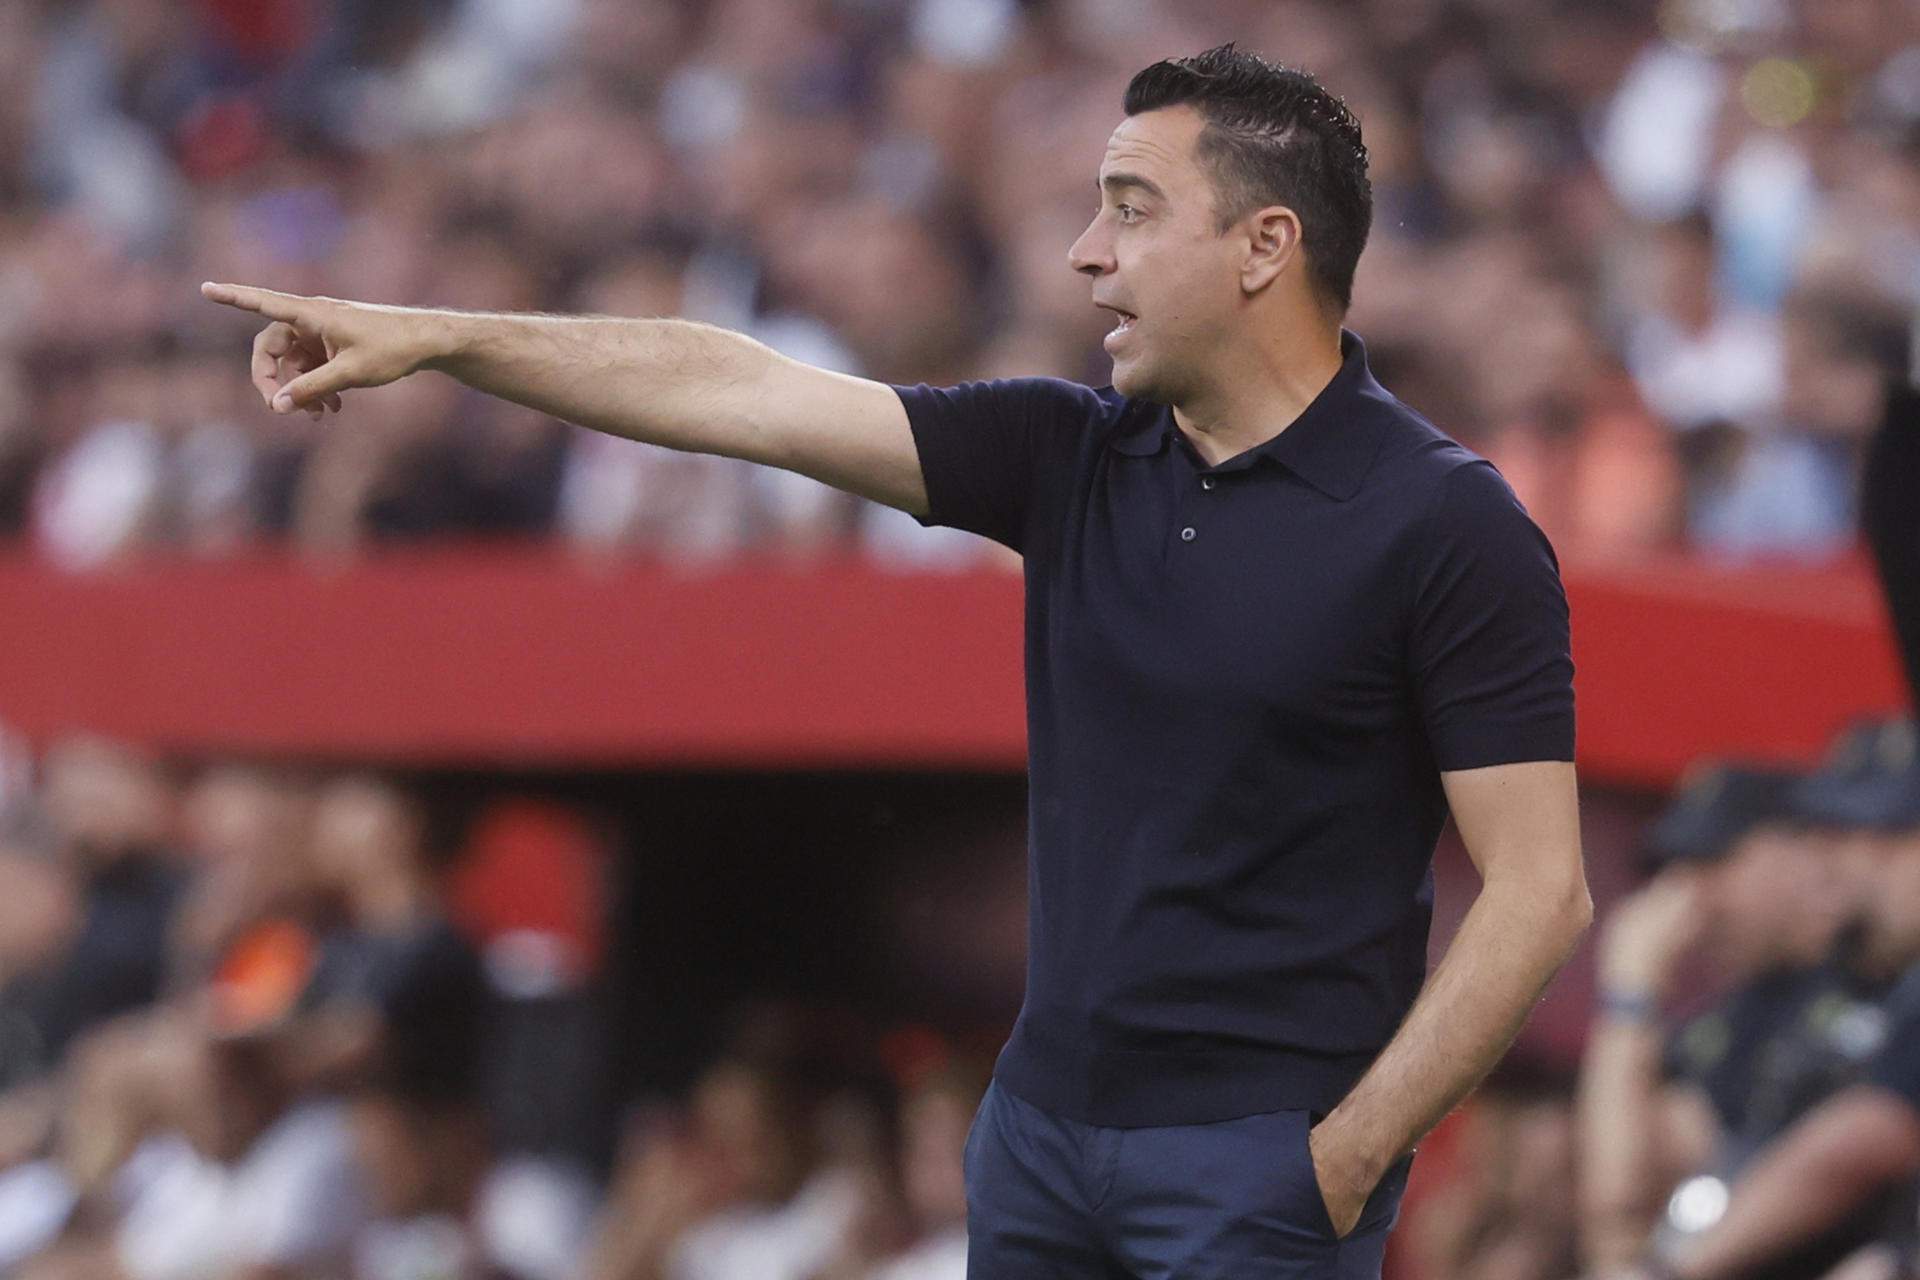 D'intocable amb Xavi Hernández a figurar a totes les travesses perquè Flick el faci fora del Barça